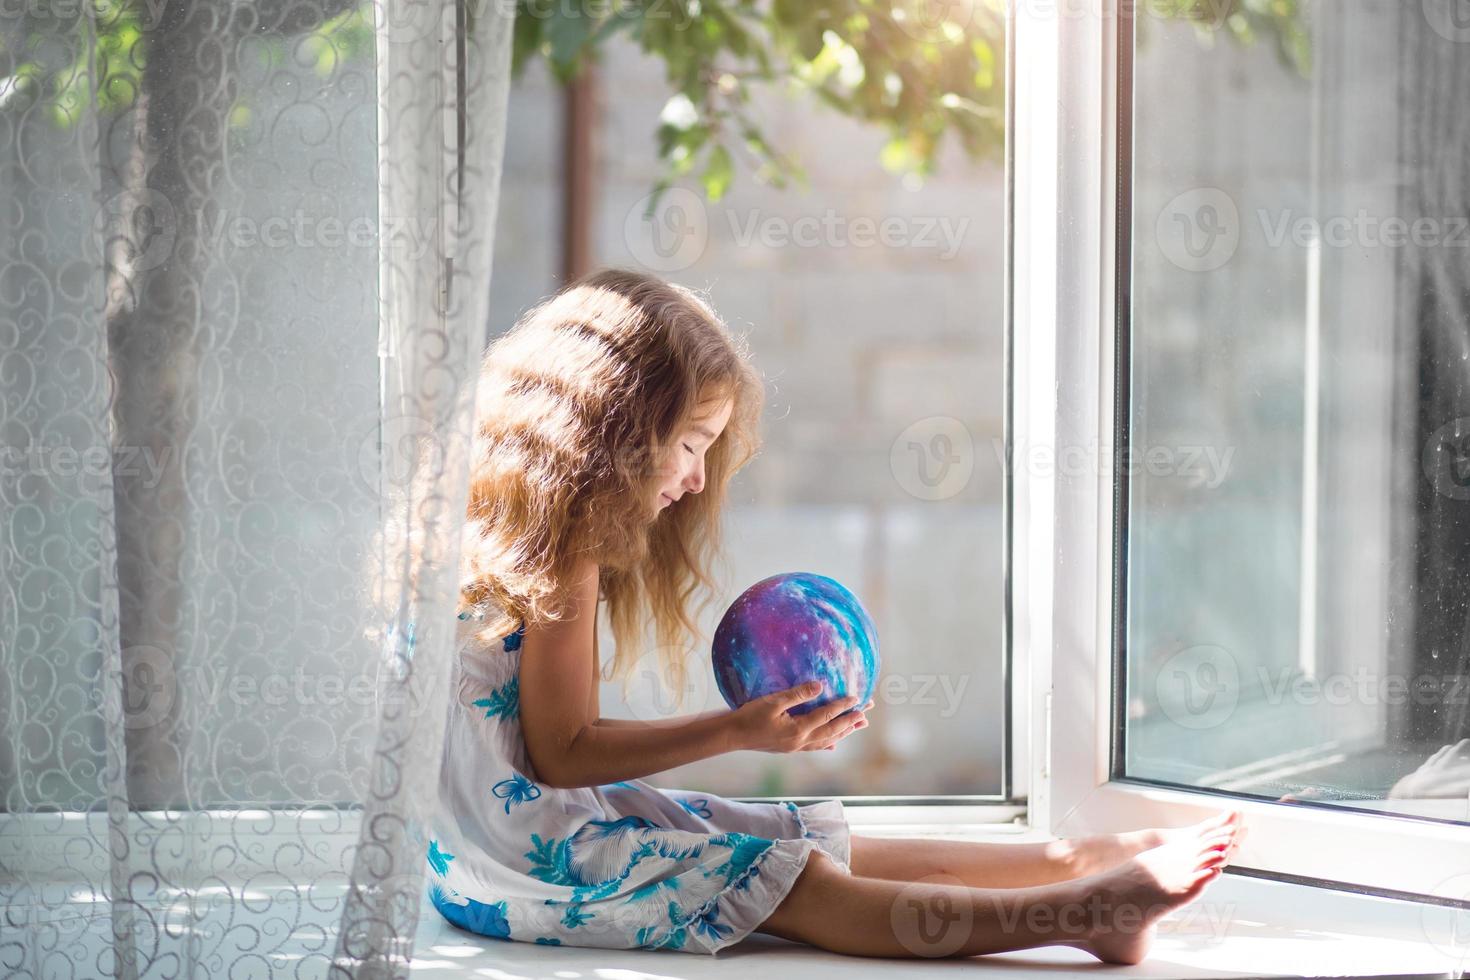 flickan i husets fönster håller i en lampa i form av en planet, en jordglob. fred, ekologi, miljö, fridfullt foto